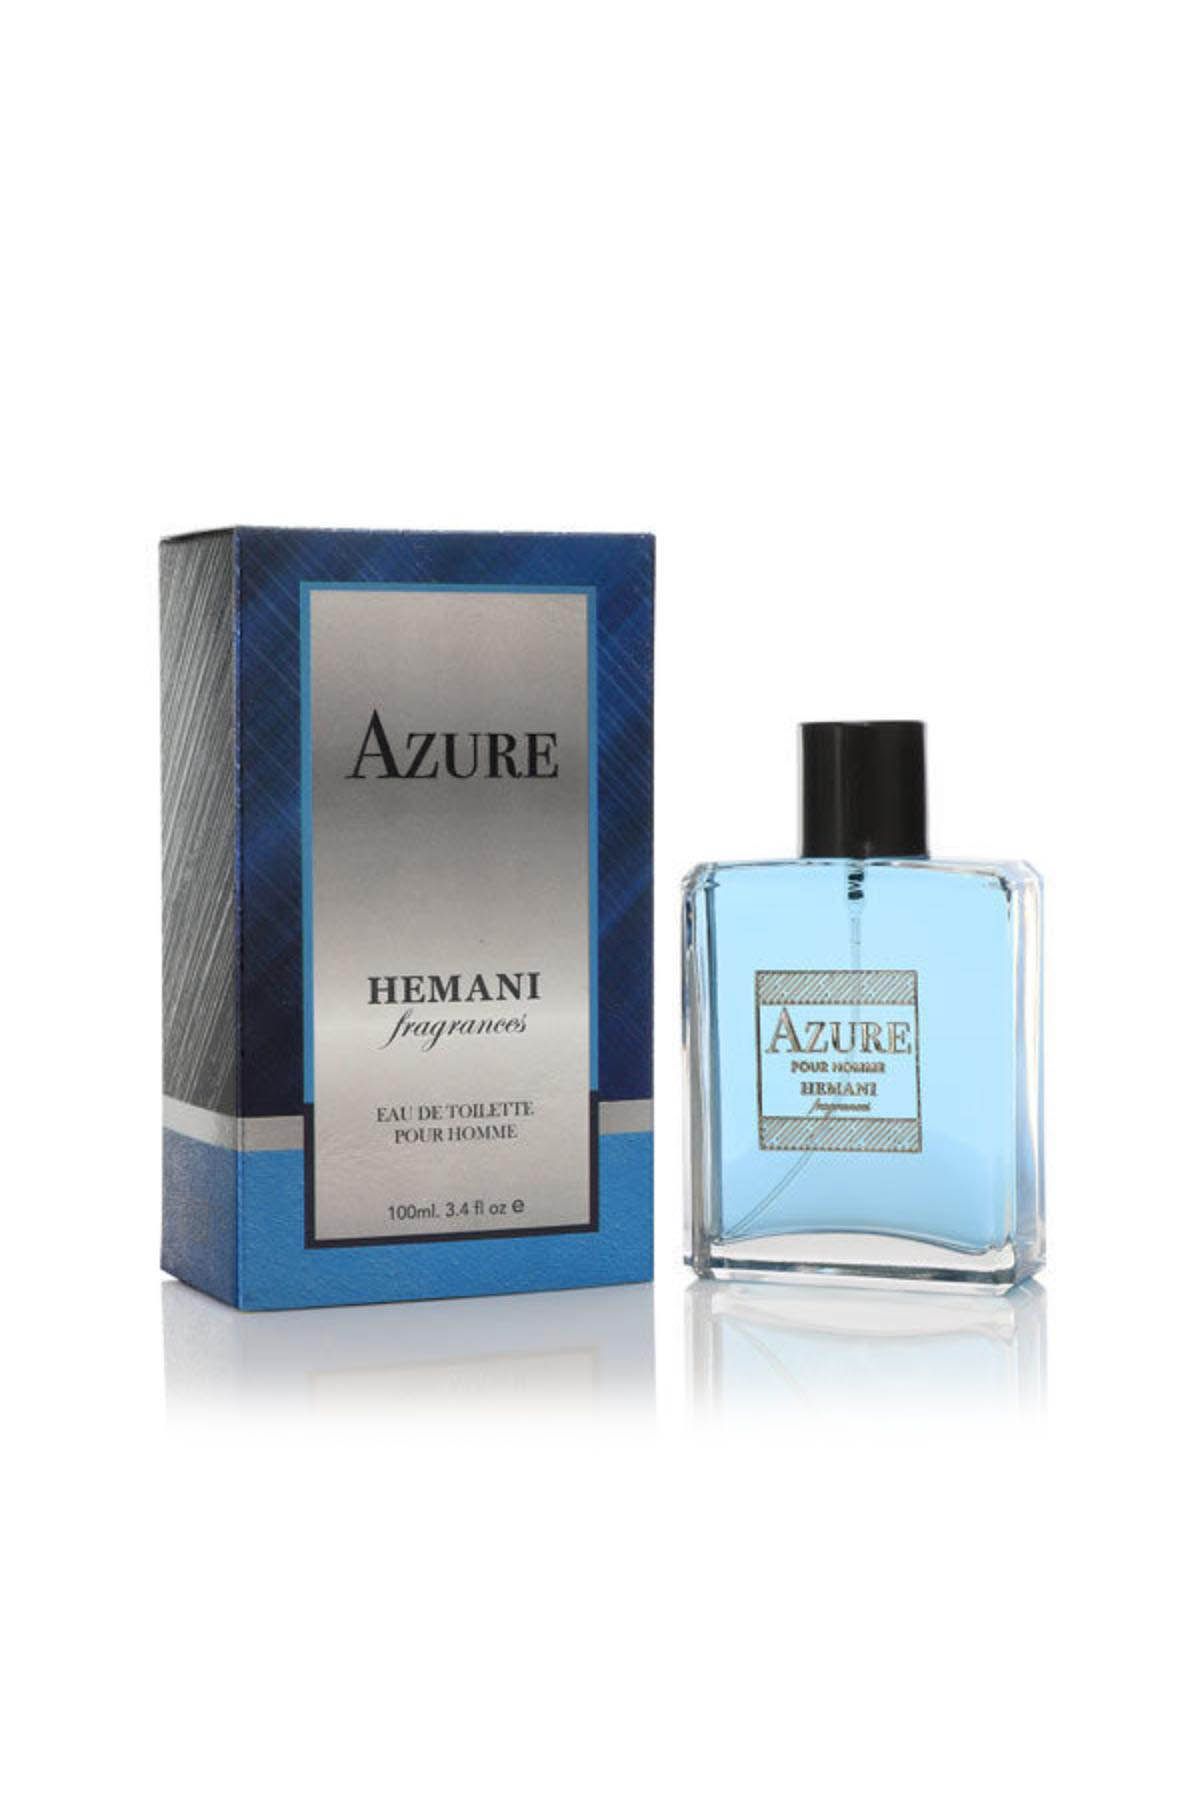 Azure Perfume for Men